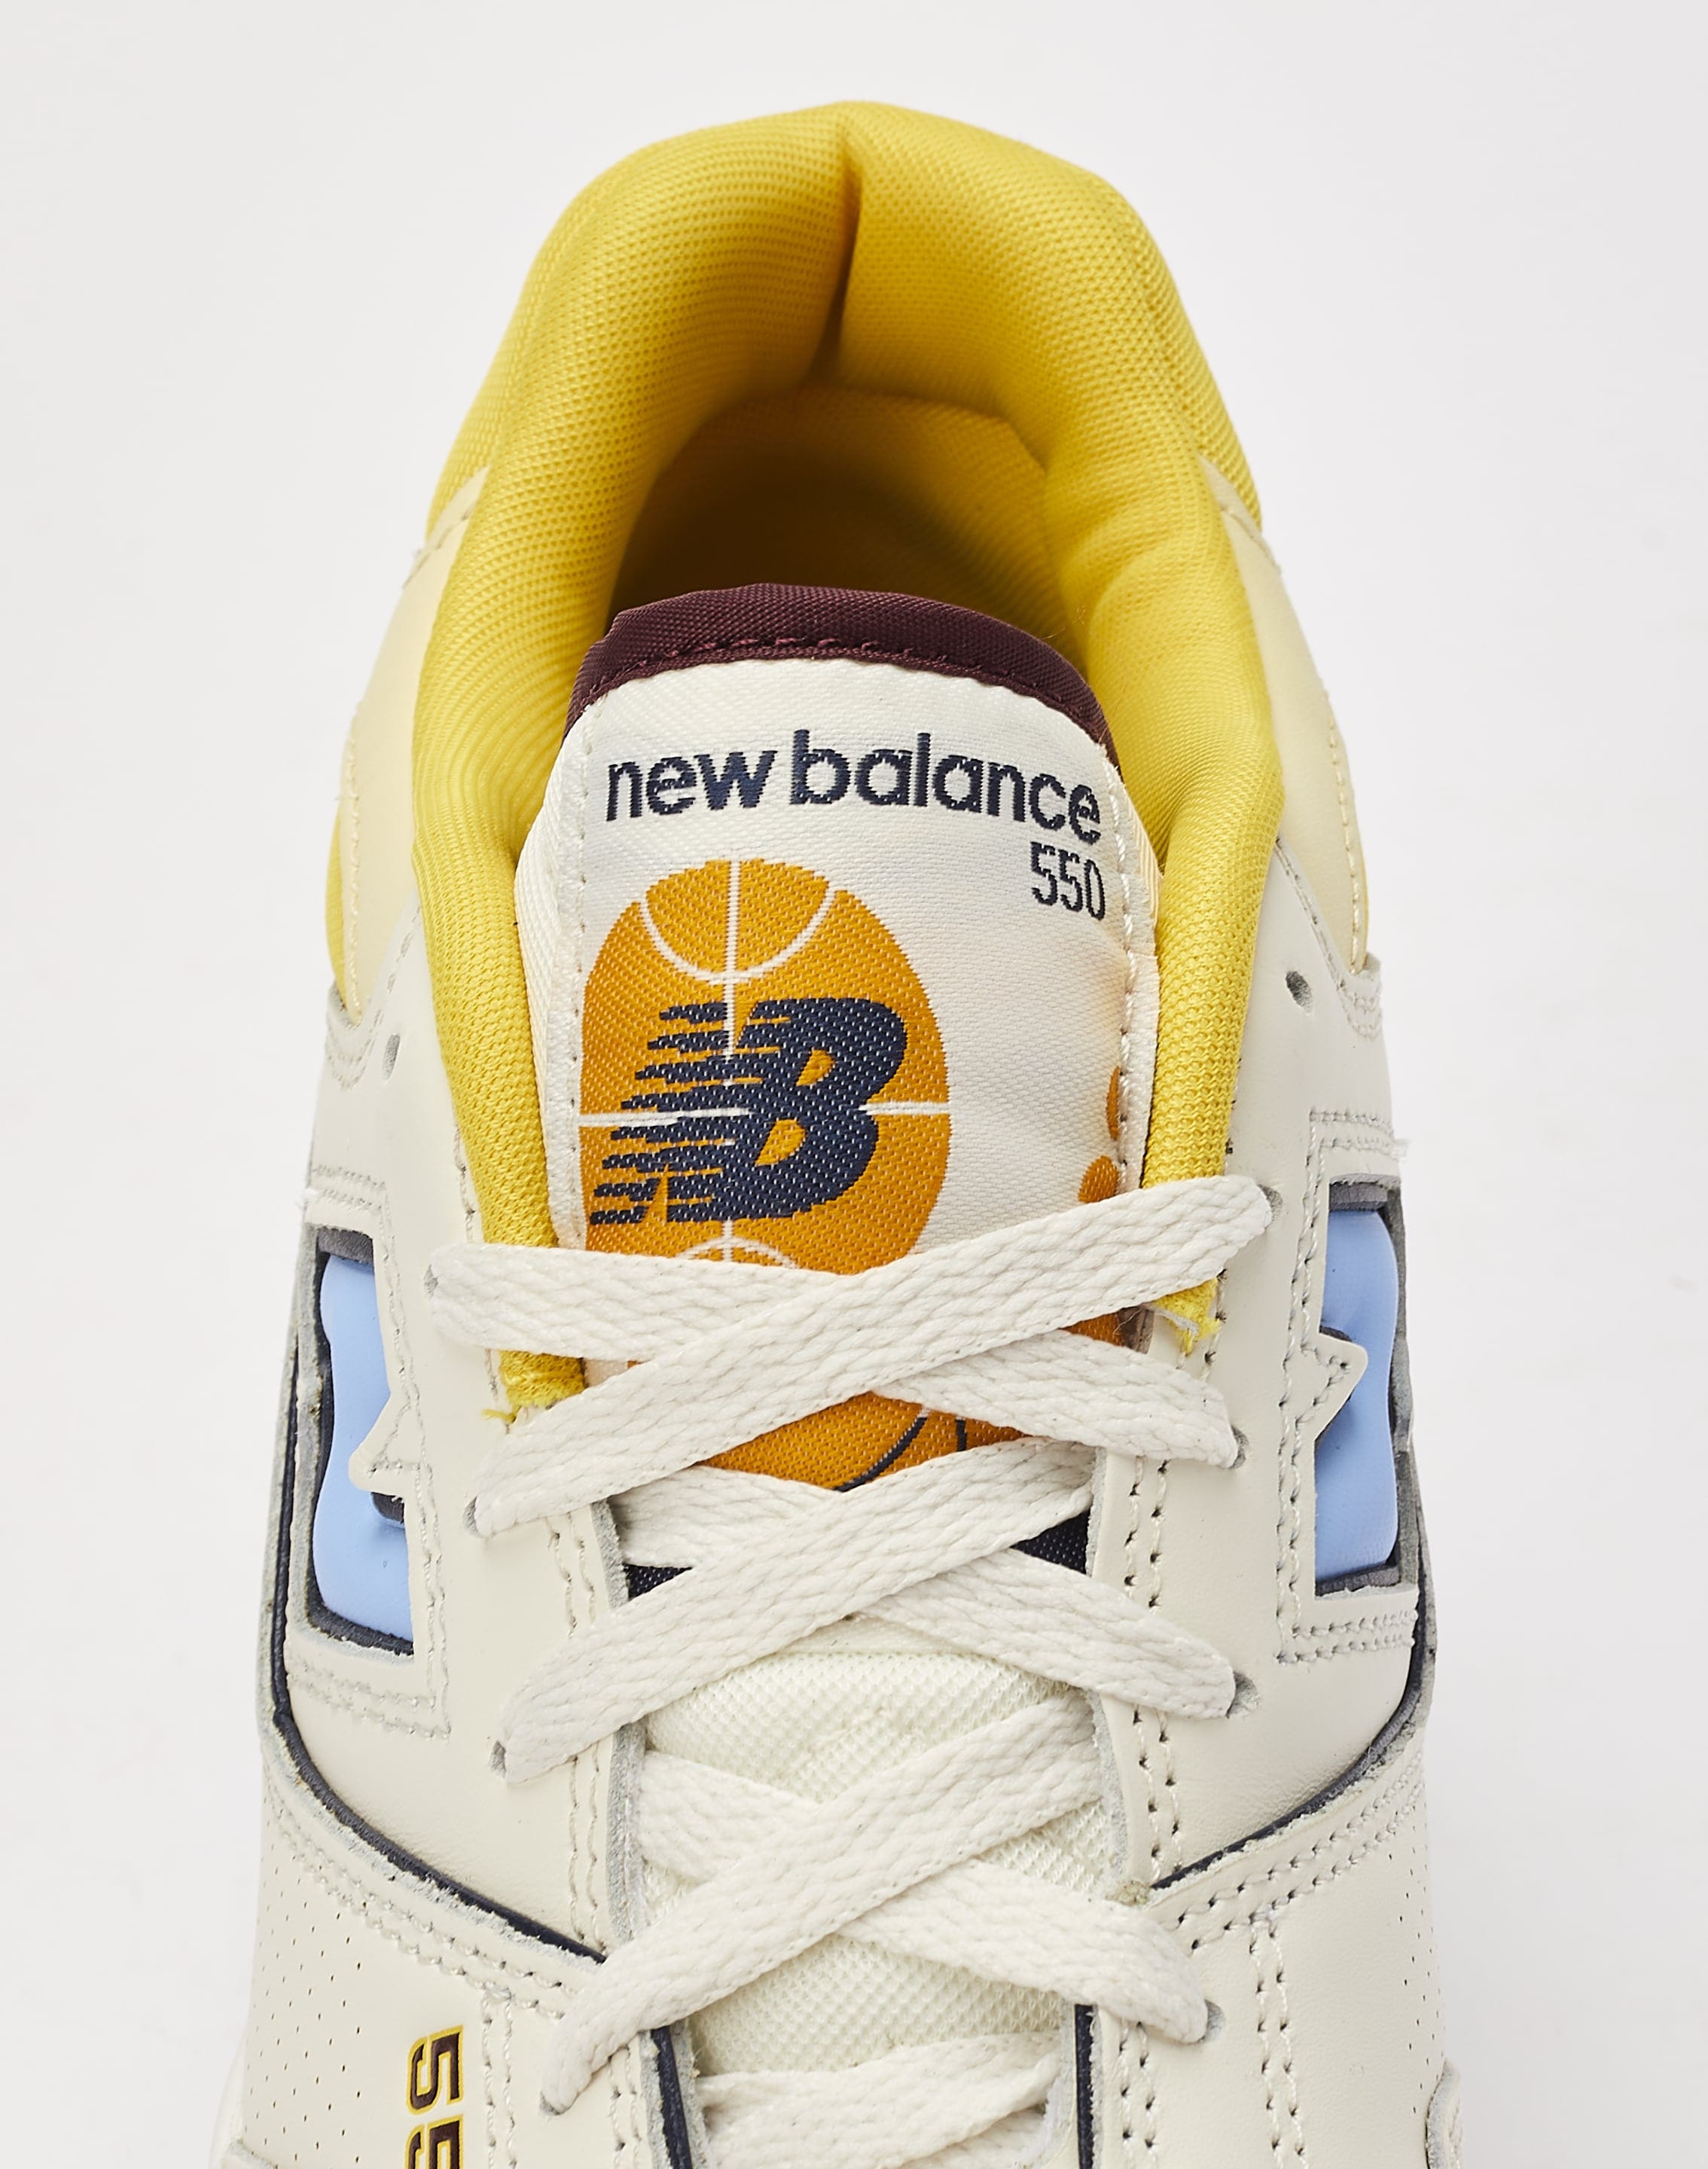 New Balance 550 – DTLR